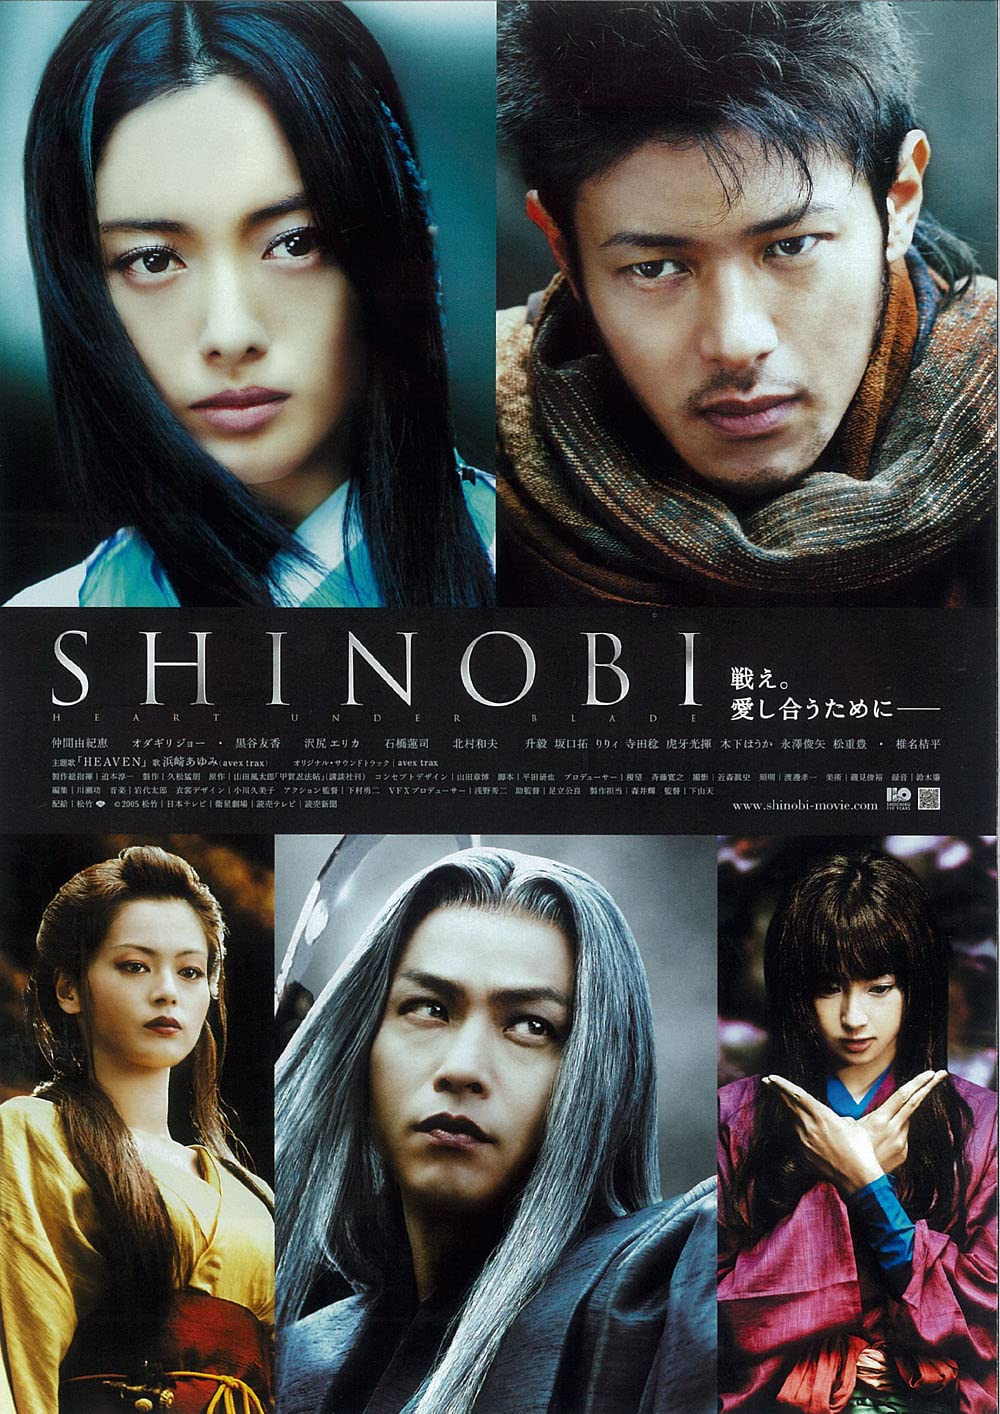 Shinobi: Heart Under Blade Wallpapers